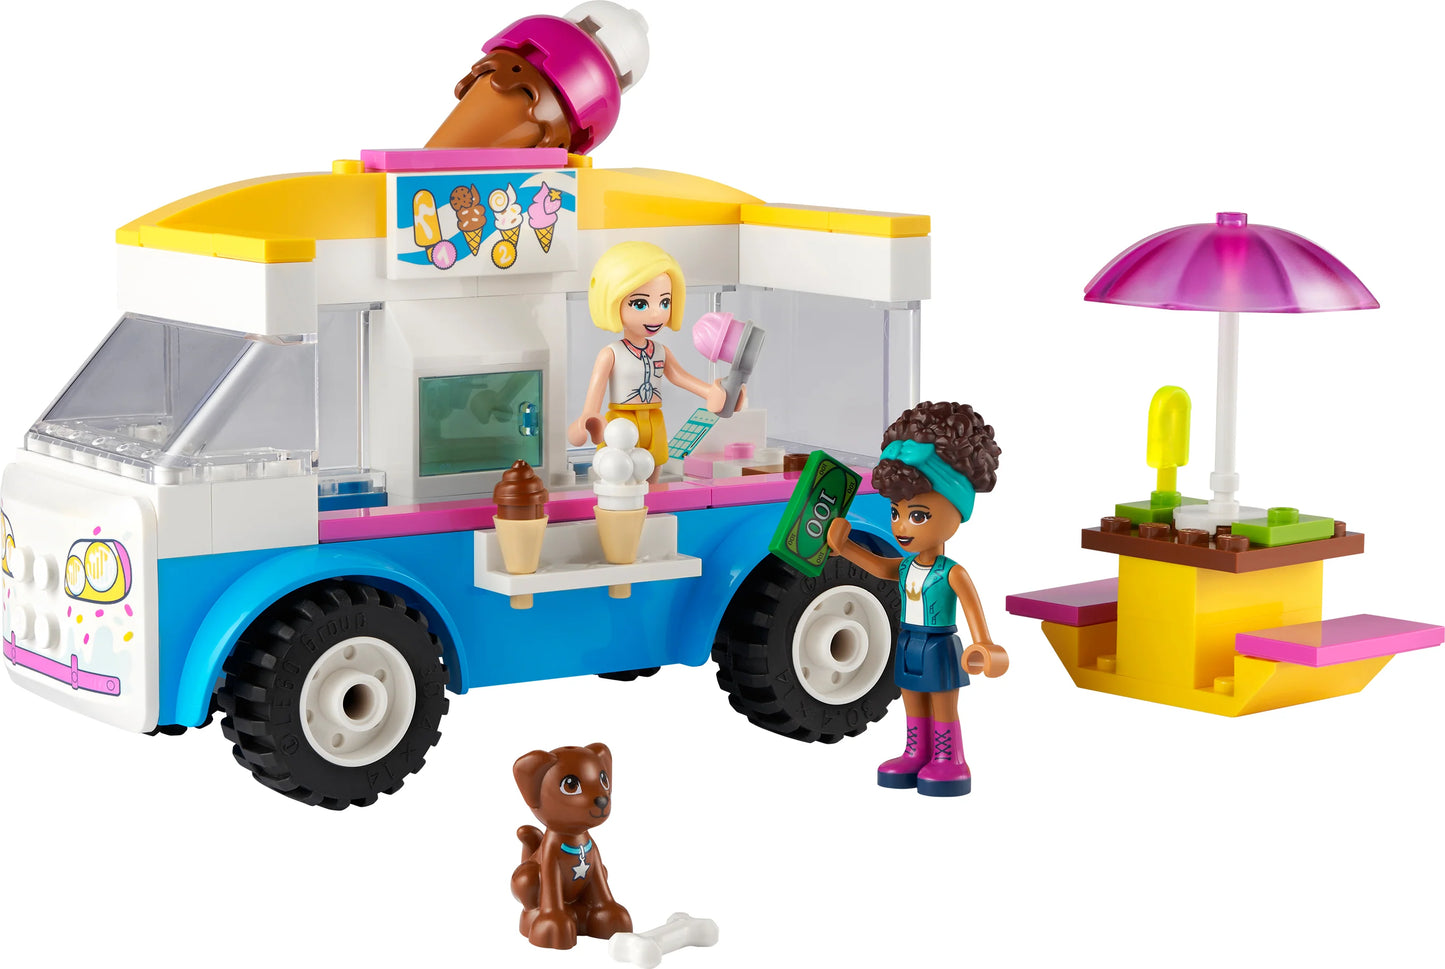 IJswagen-LEGO Friends